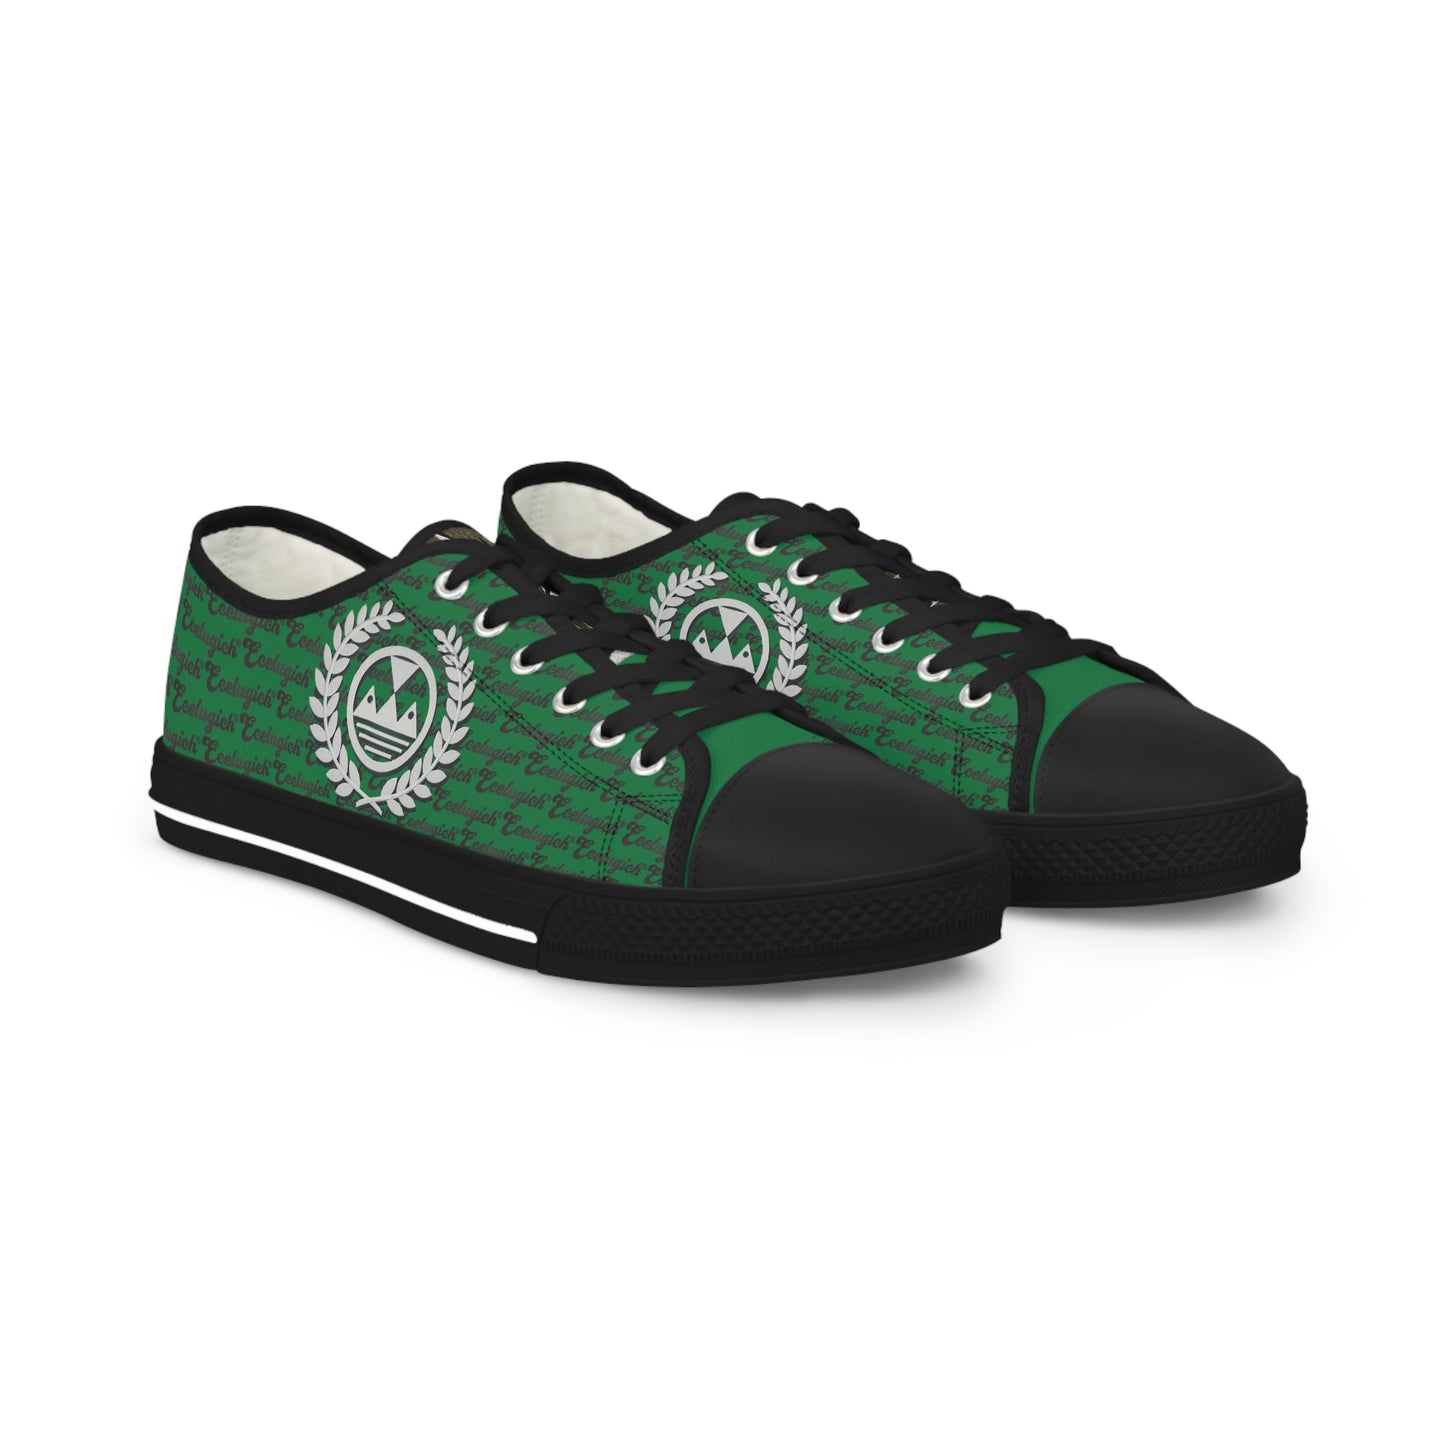 Ecelugich Dark Green Men's Low Top Sneakers